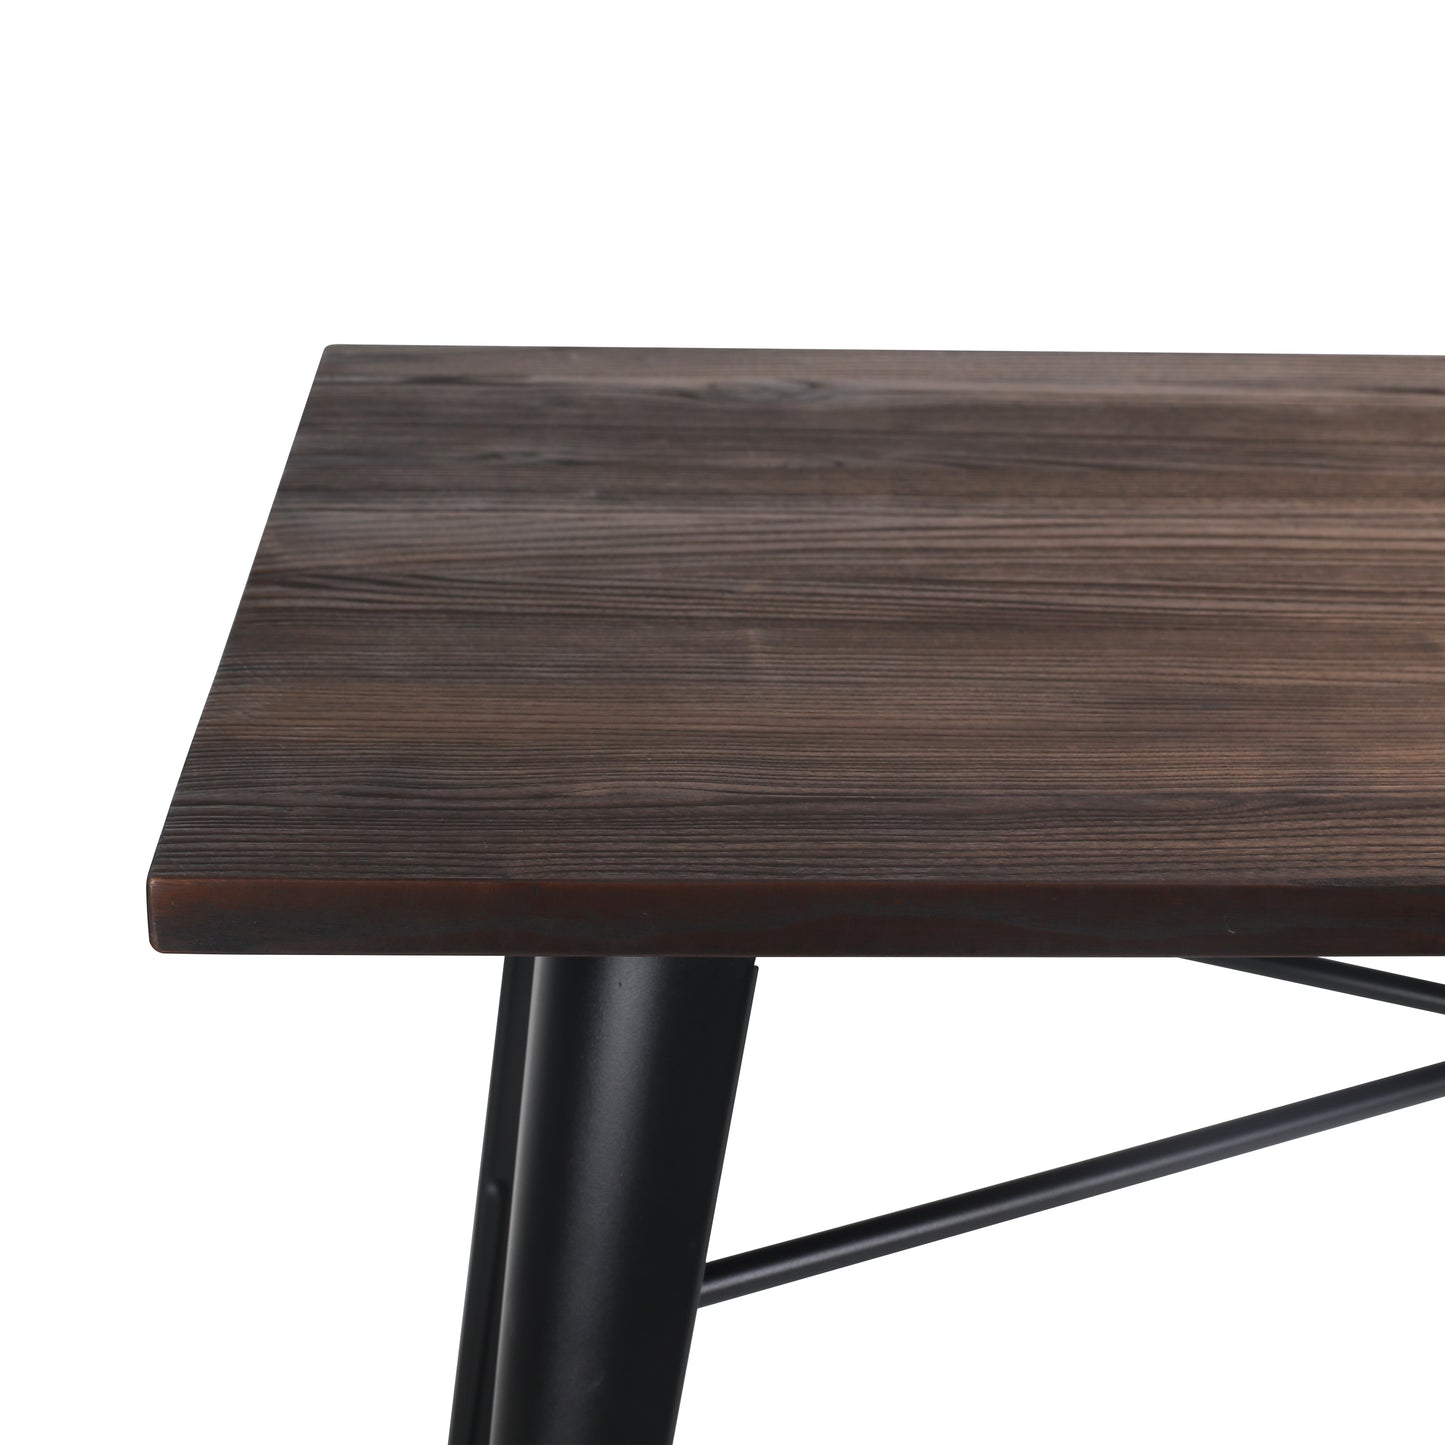 Table Factory 120 x 80 cm en métal noir mat et plateau en bois foncé